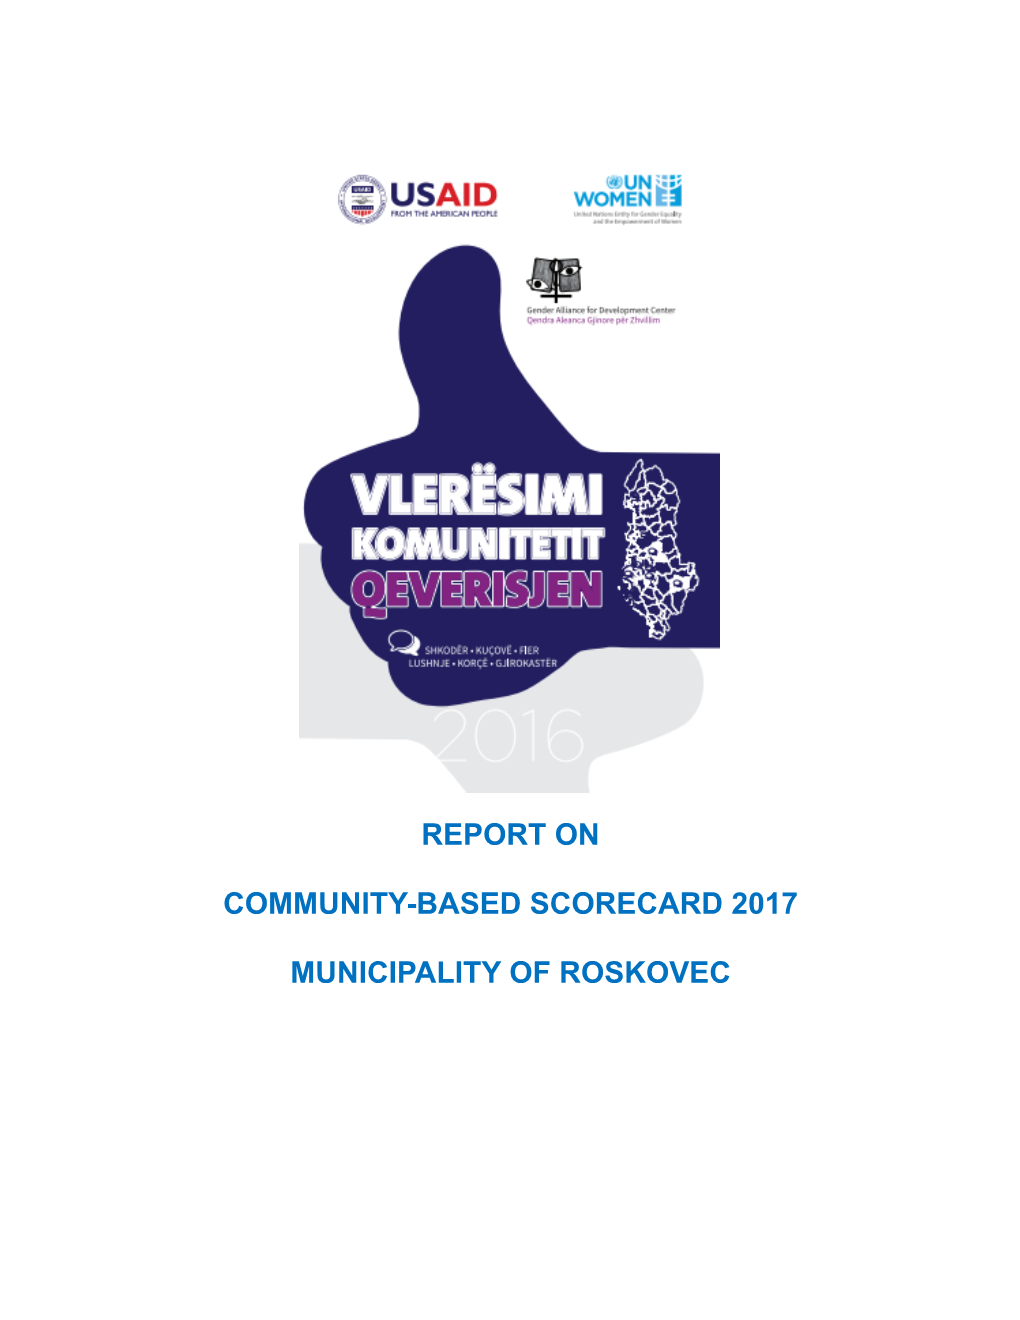 Community-Based Scorecard 2017